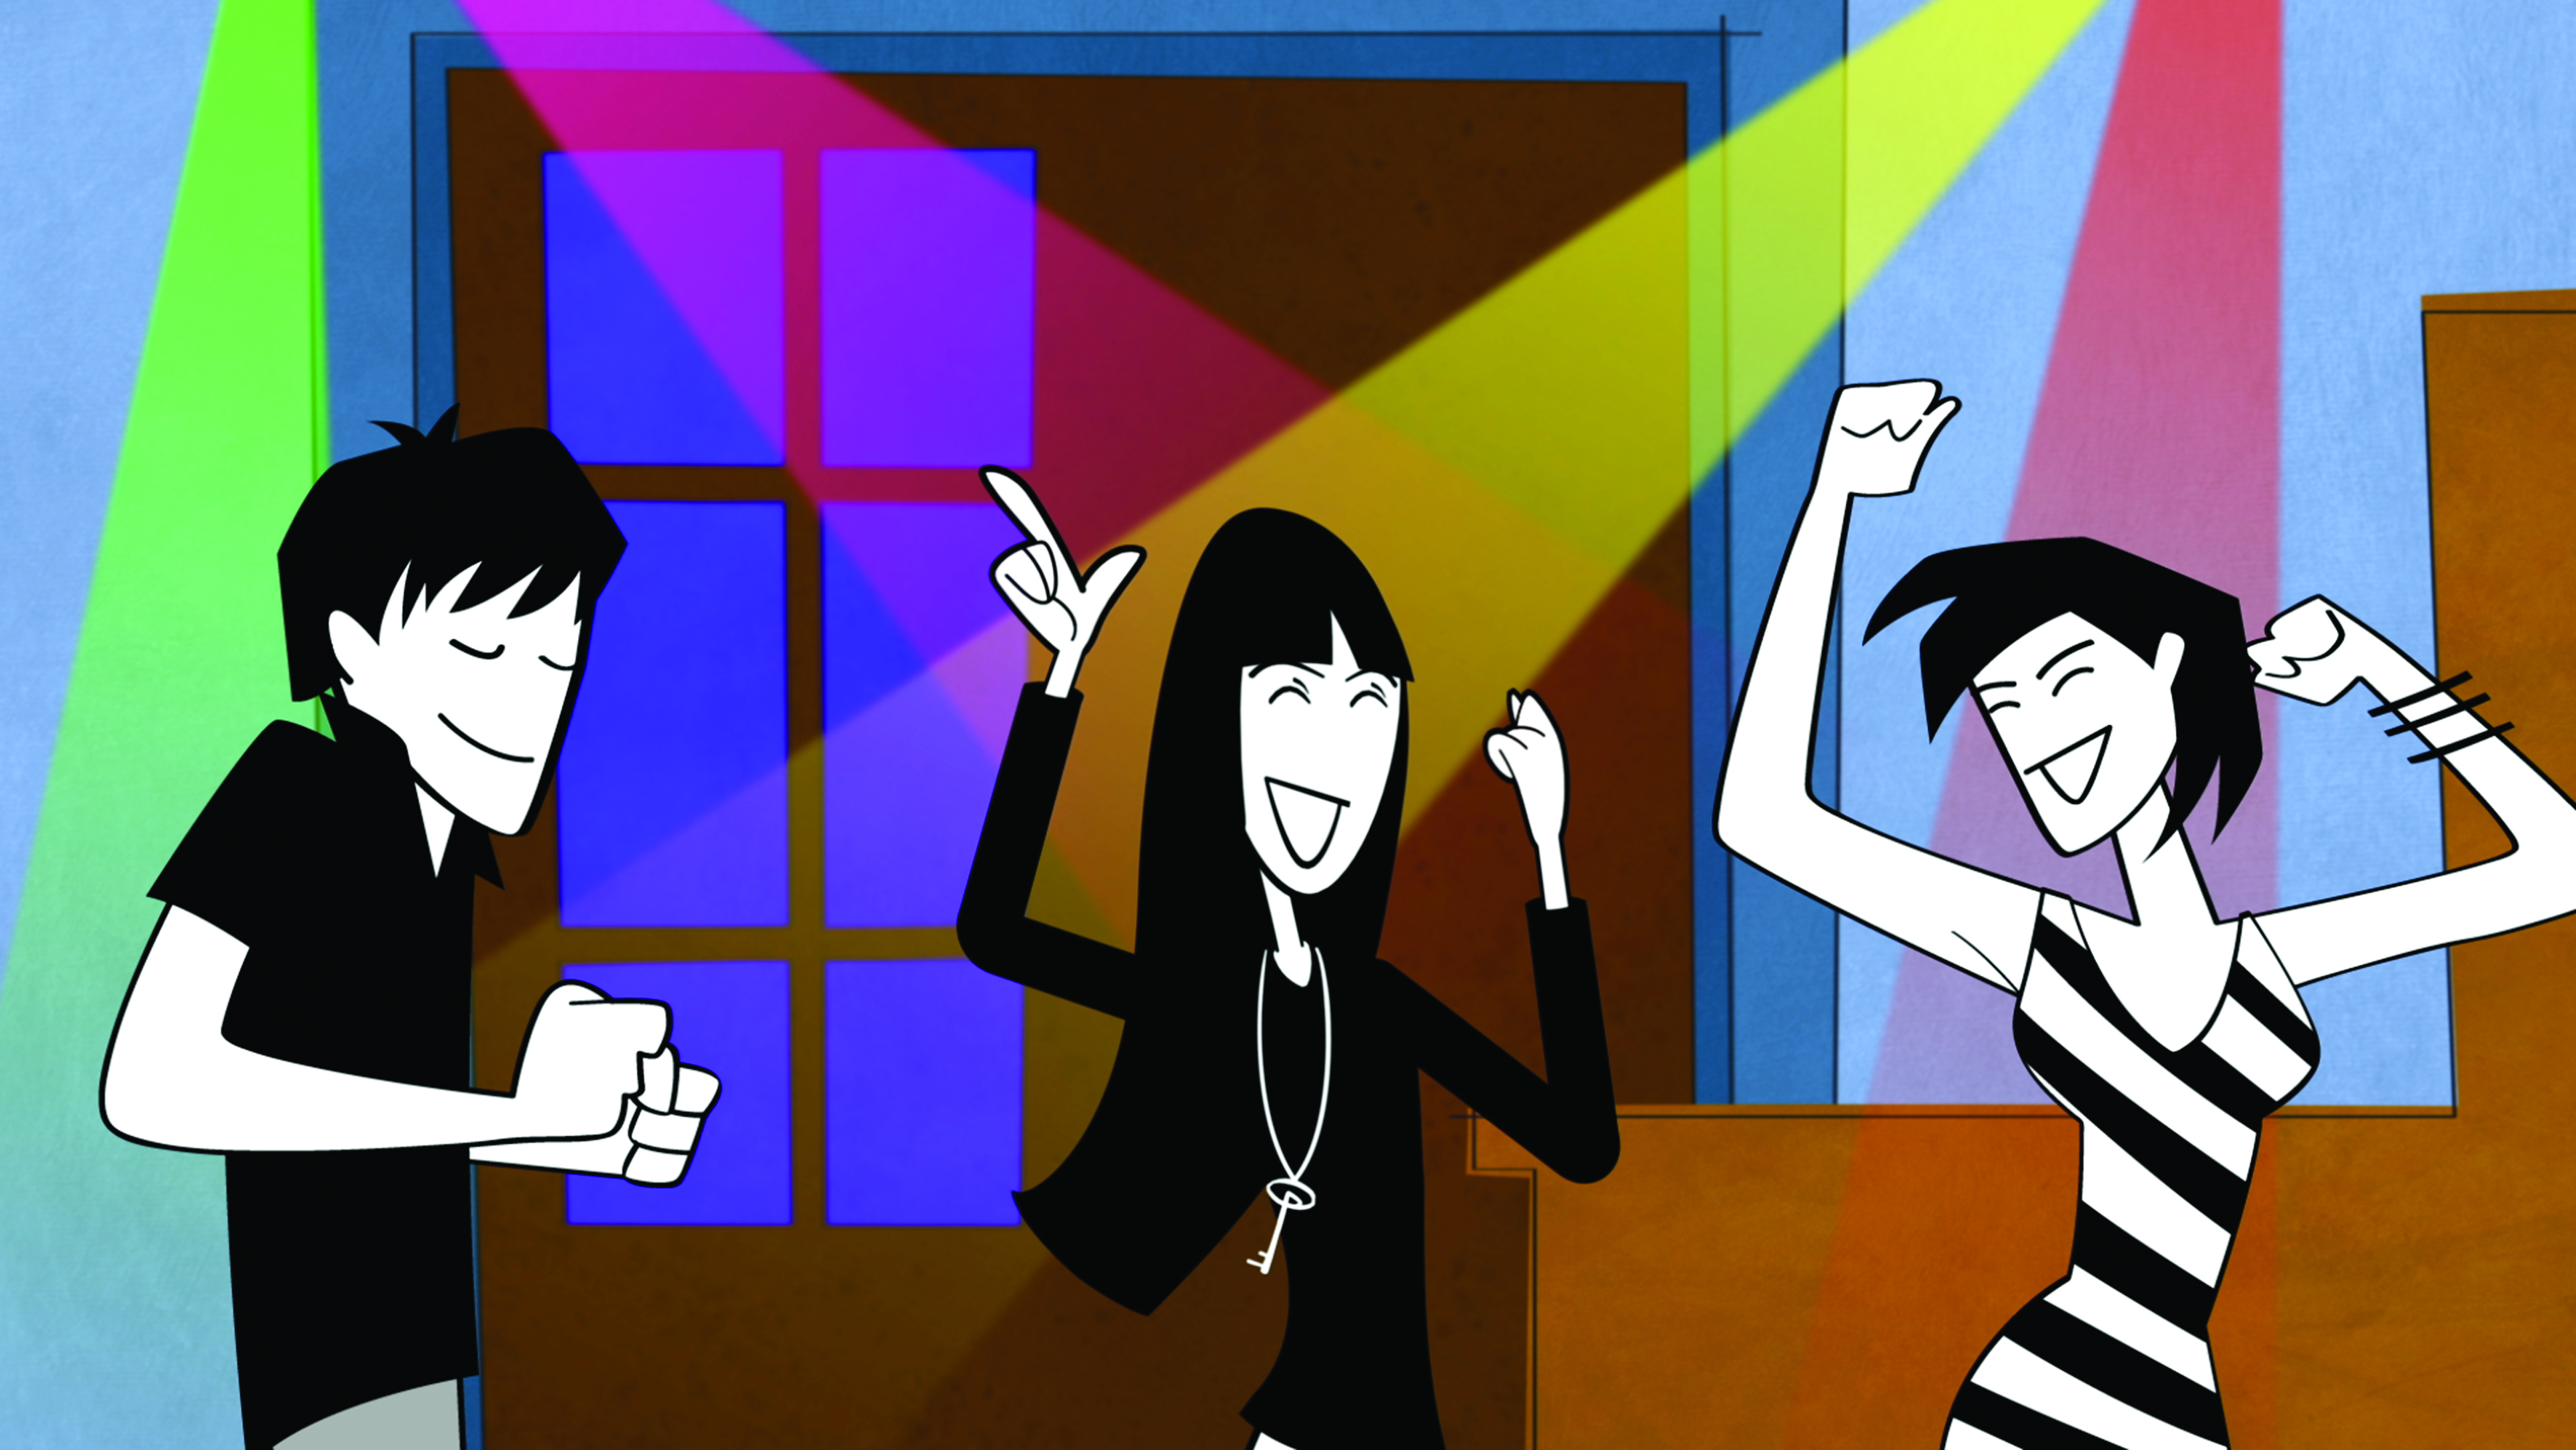 Zica dança na festa com seus amigos em preto e branco